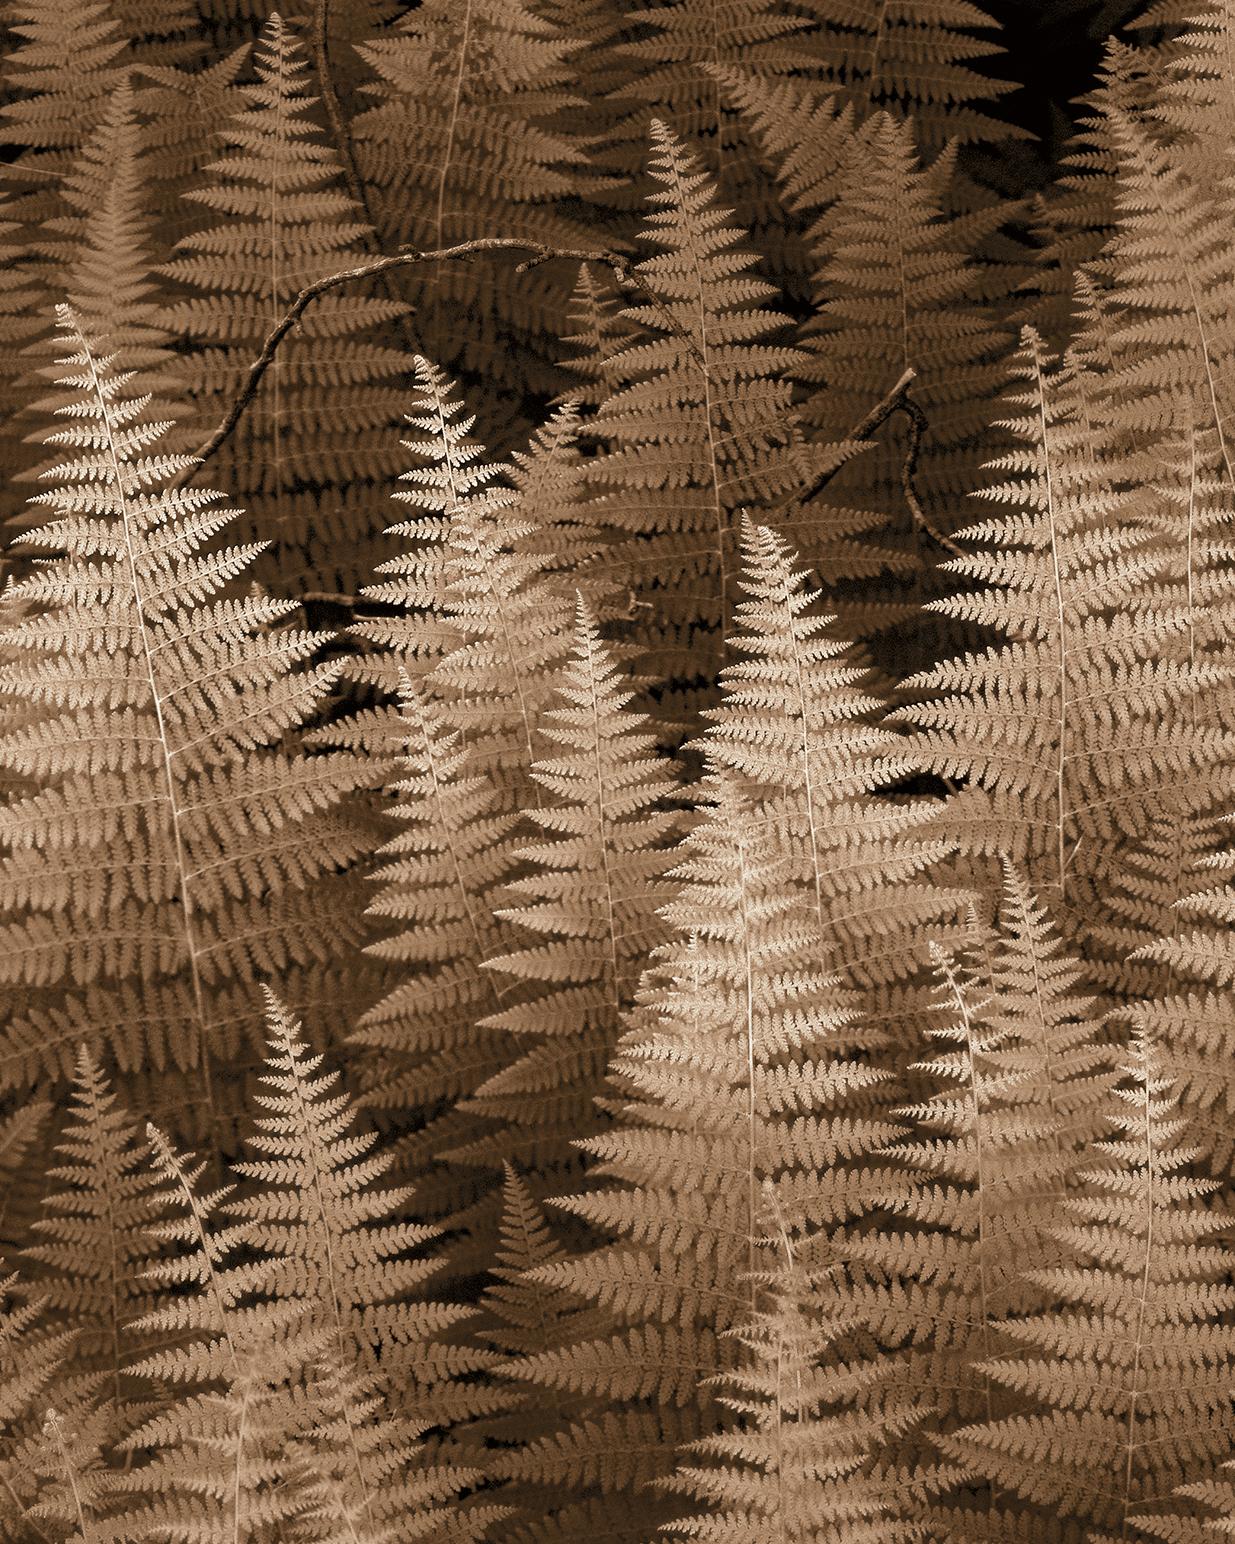 Ferns Nr. 2 (Sepiafarbene botanische Stilllebenfotografie auf Aquarellpapier) (Zeitgenössisch), Photograph, von James Bleecker